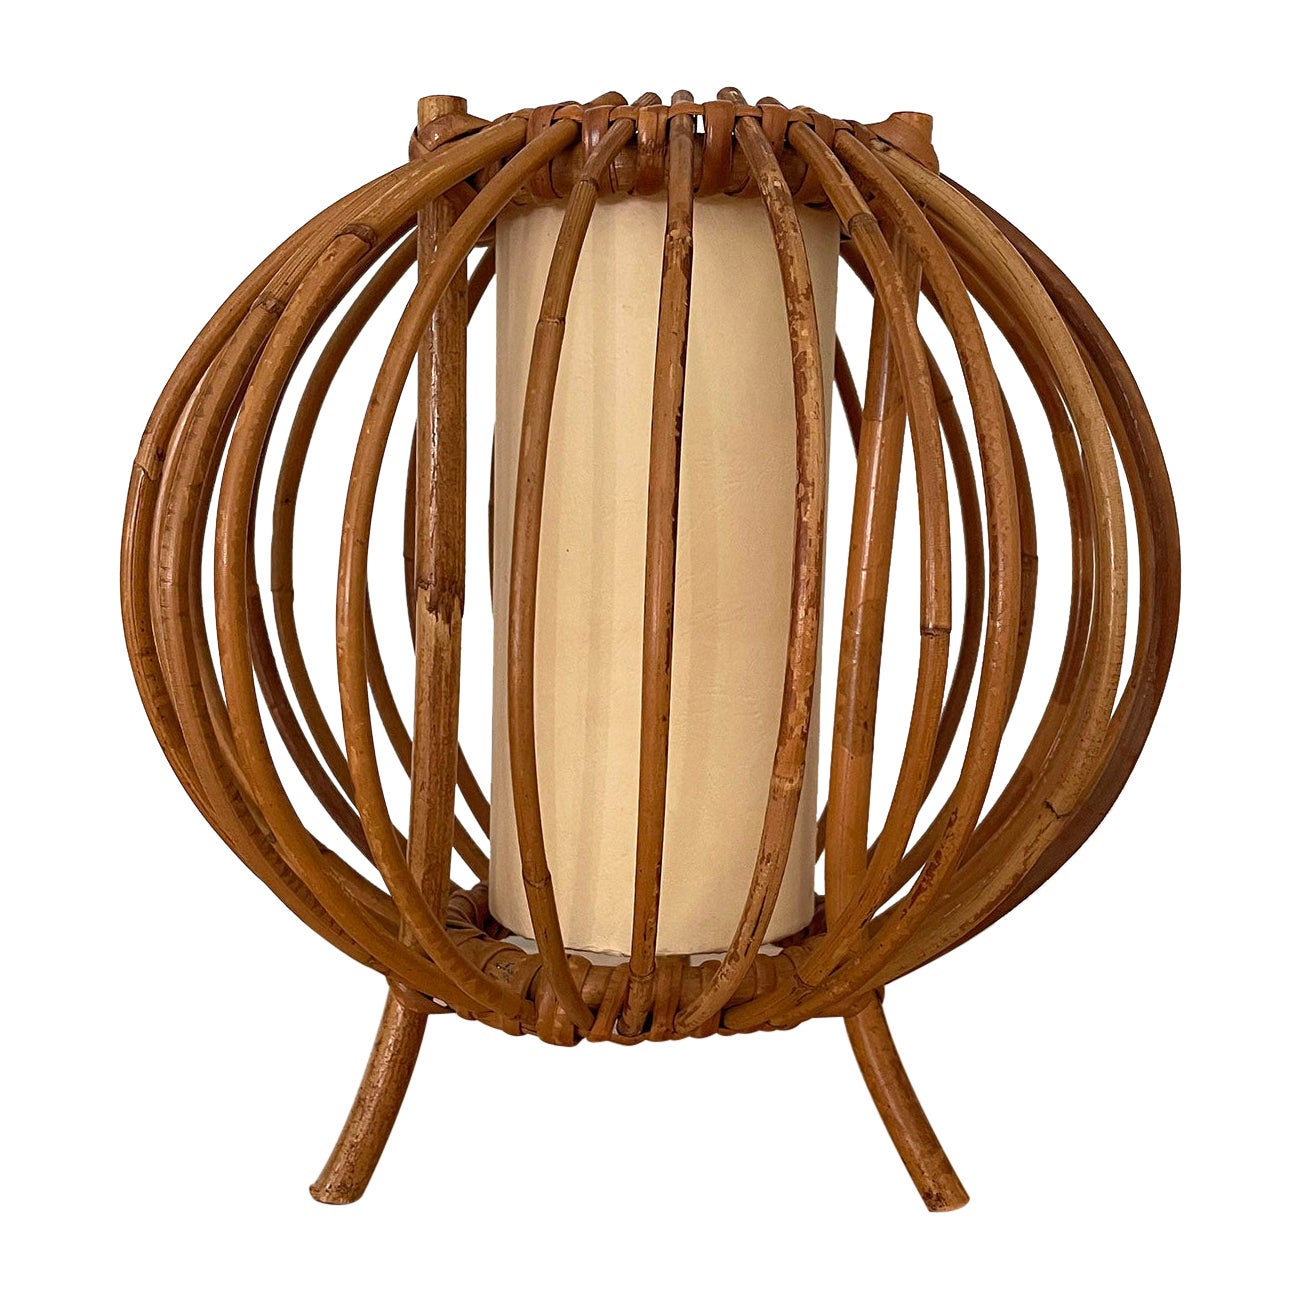 Italian Mid Century Bamboo & Rattan Table Lamp